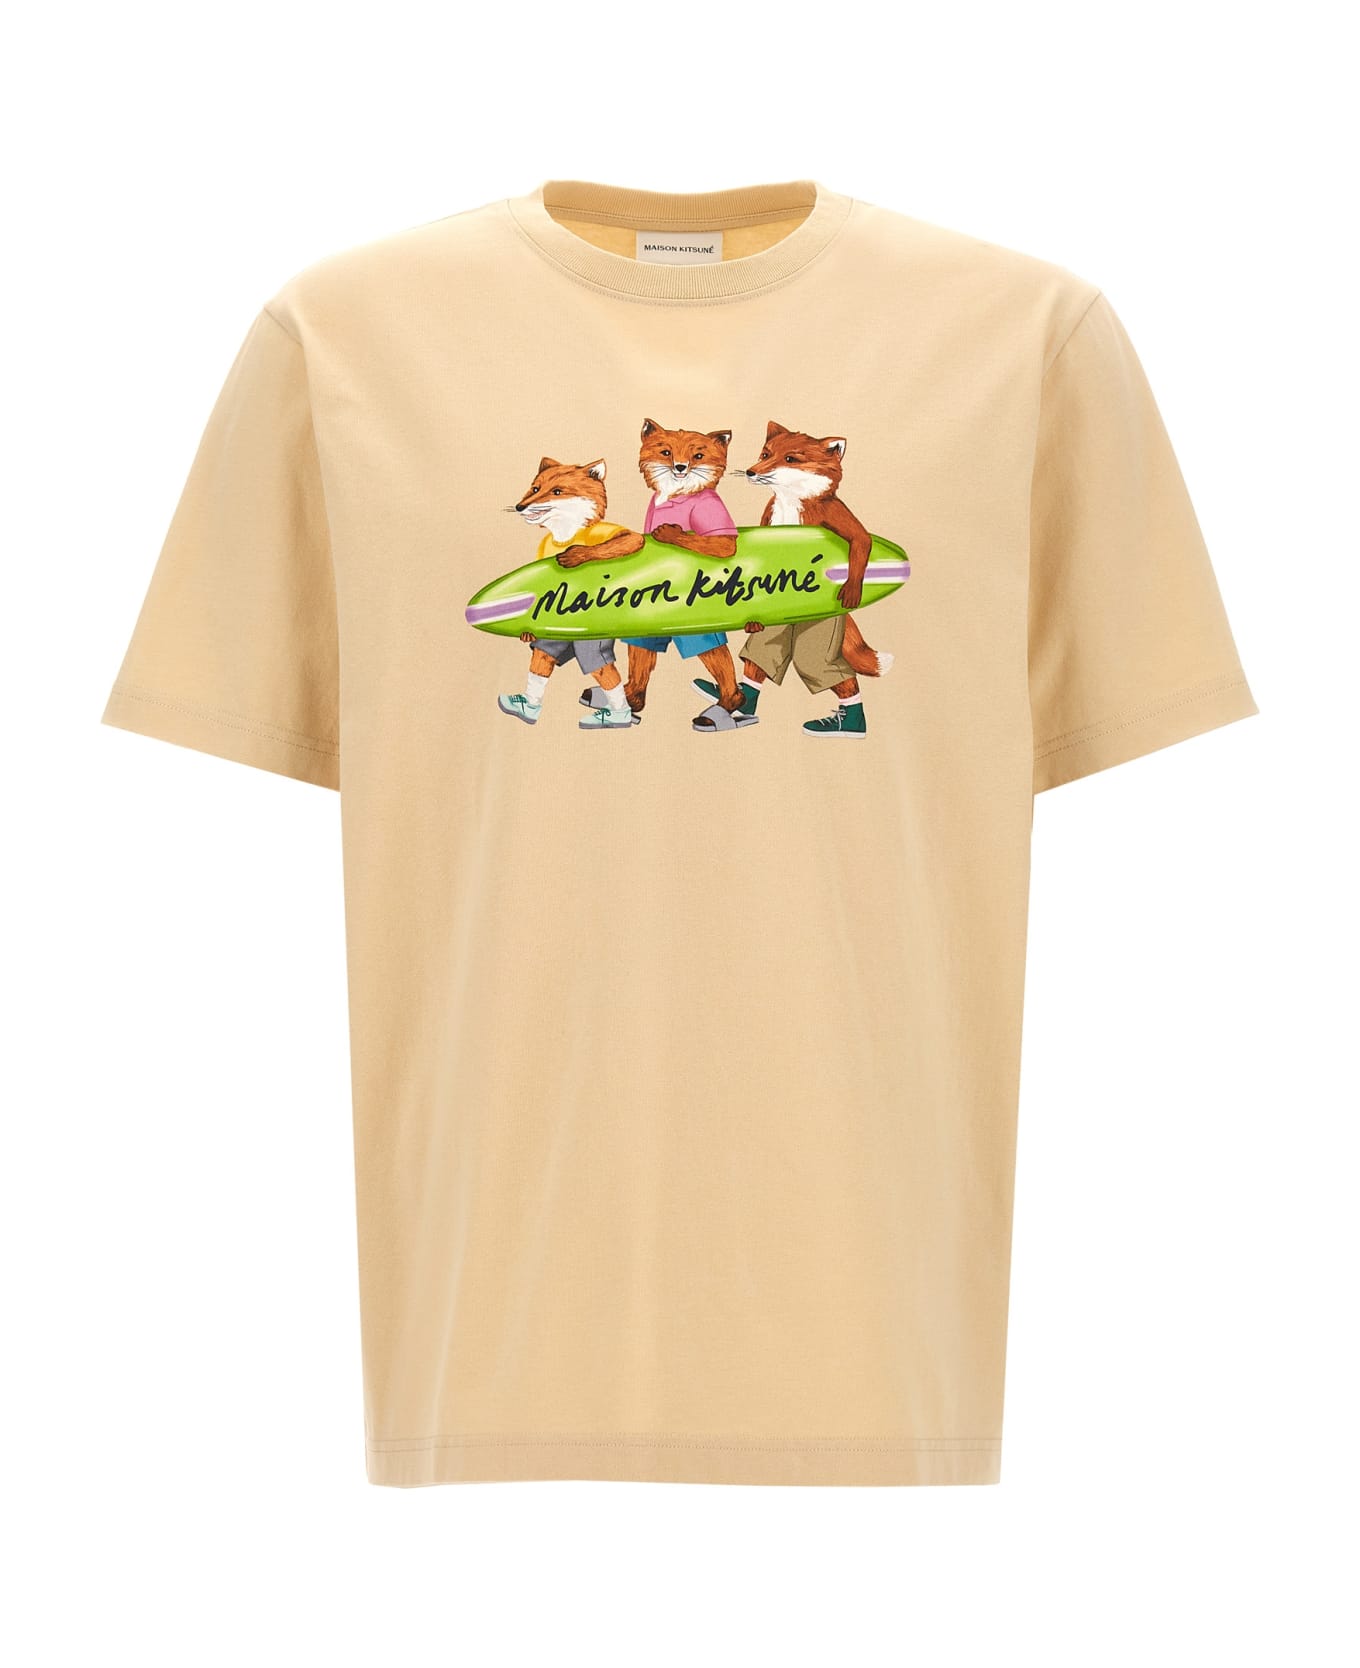 Maison Kitsuné 'surfing Foxes' T-shirt - Beige